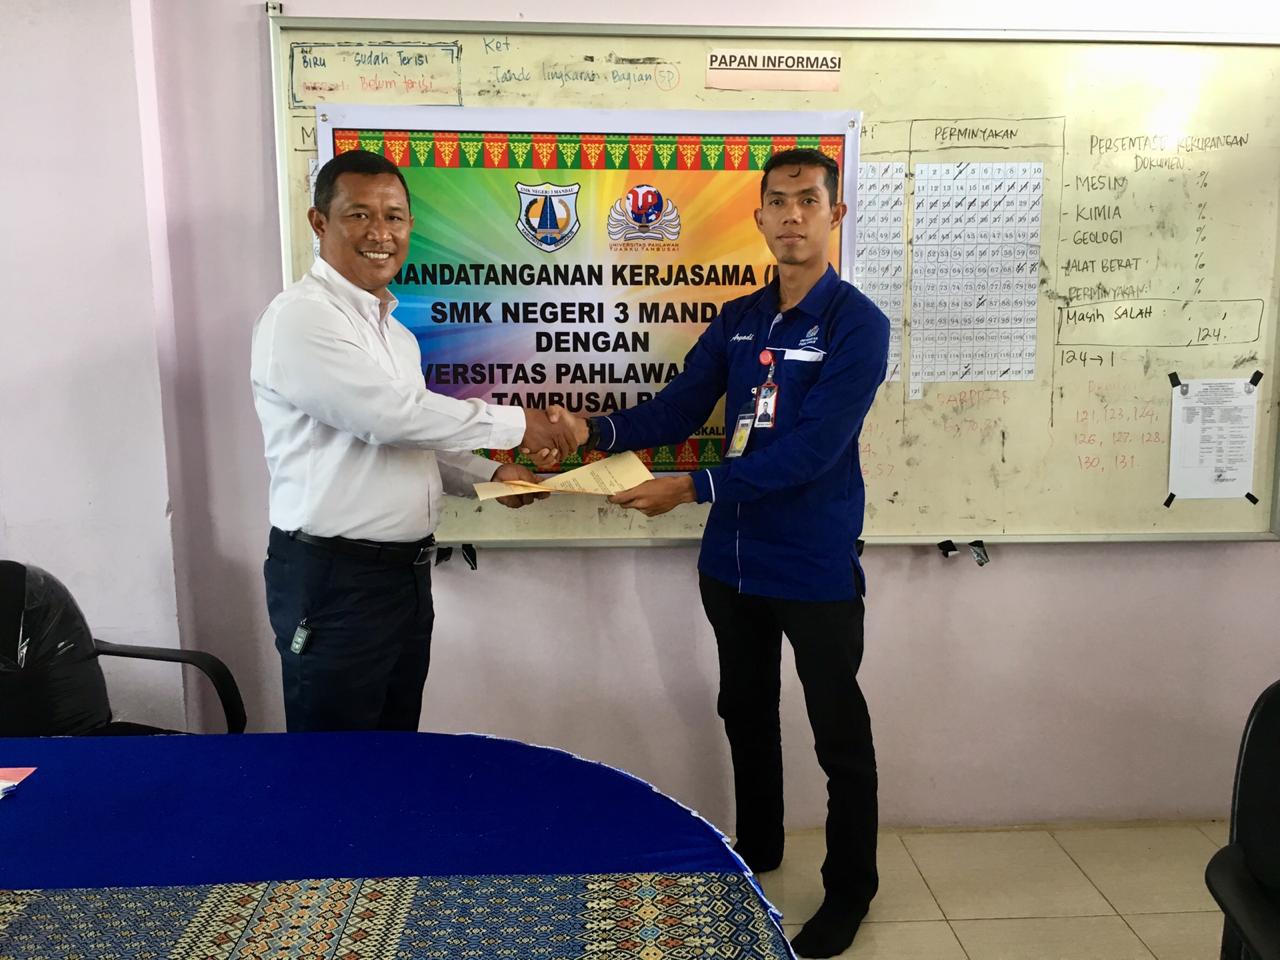 Dua SMK di Bengkalis Apresiasi Nota Kerjasama dari Universitas Pahlawan Tuanku Tambusai (UP)